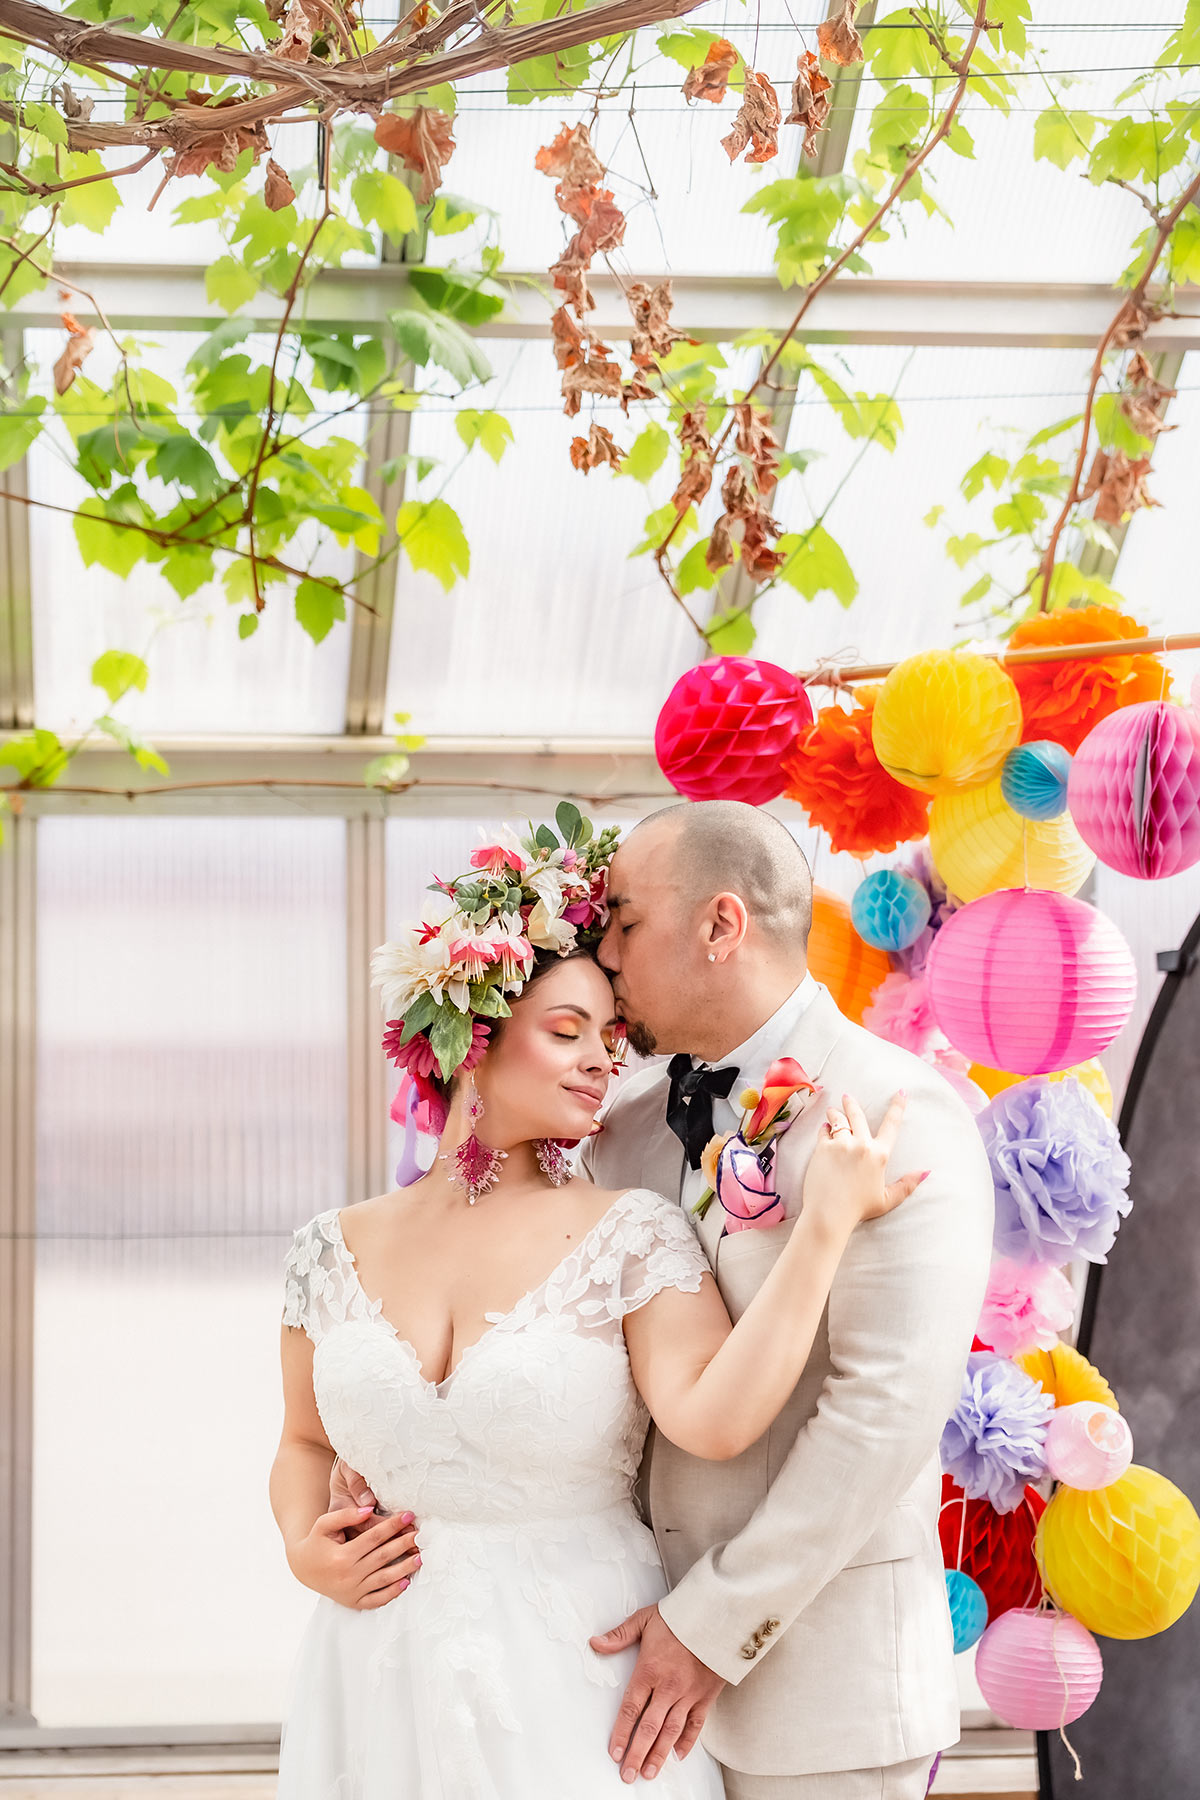 Ett brudpar håller om varandra framför färgglada dekorationen. De står i ett växthus och i taket hänger vinrankor. Brudgummen pussar brudens panna.